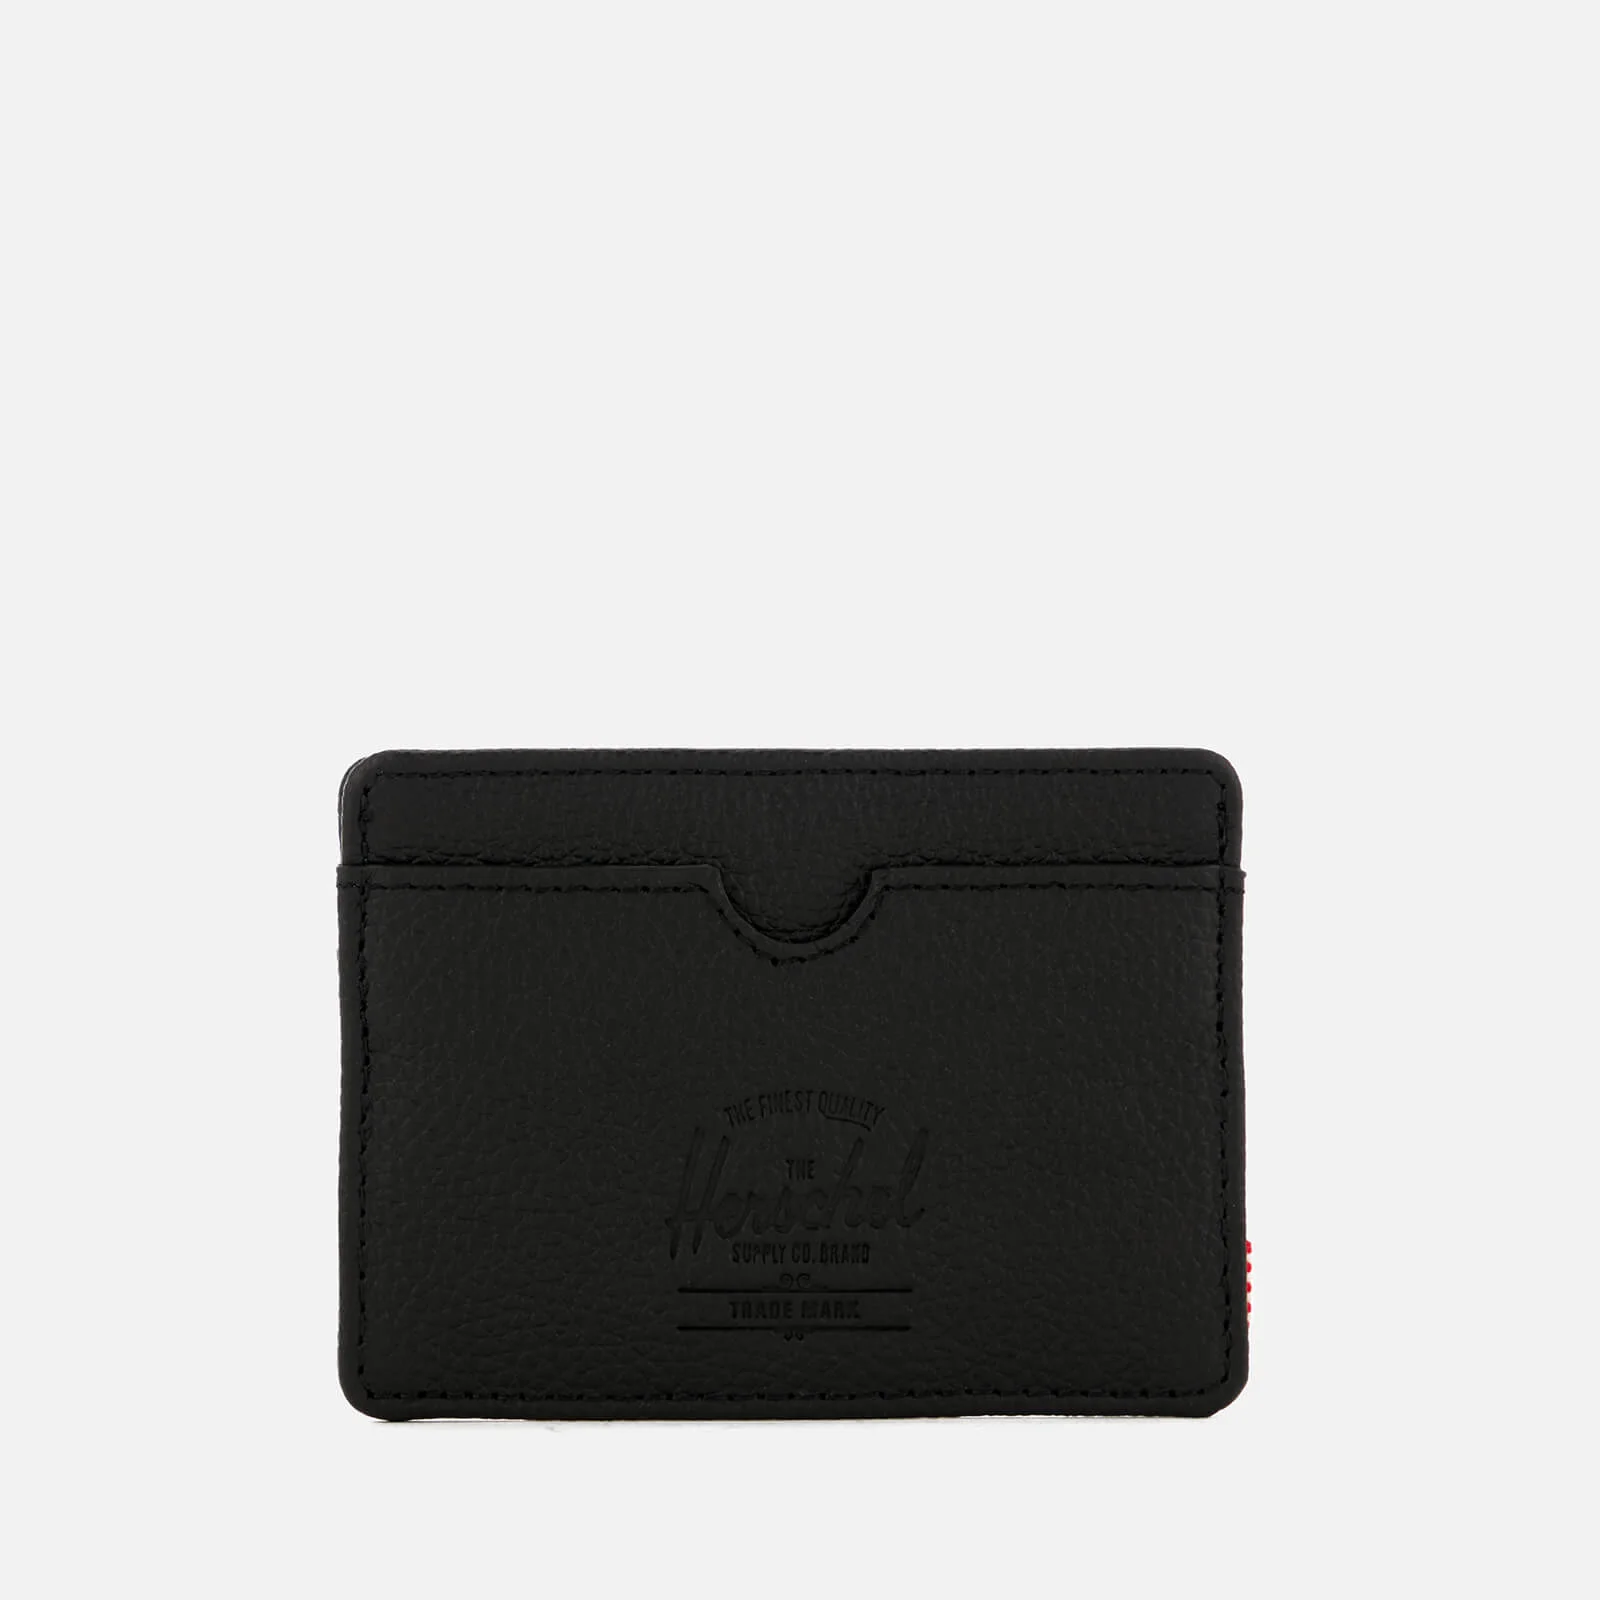 Herschel Supply Co. Men's Charlie Leather Card Holder - Black Image 1